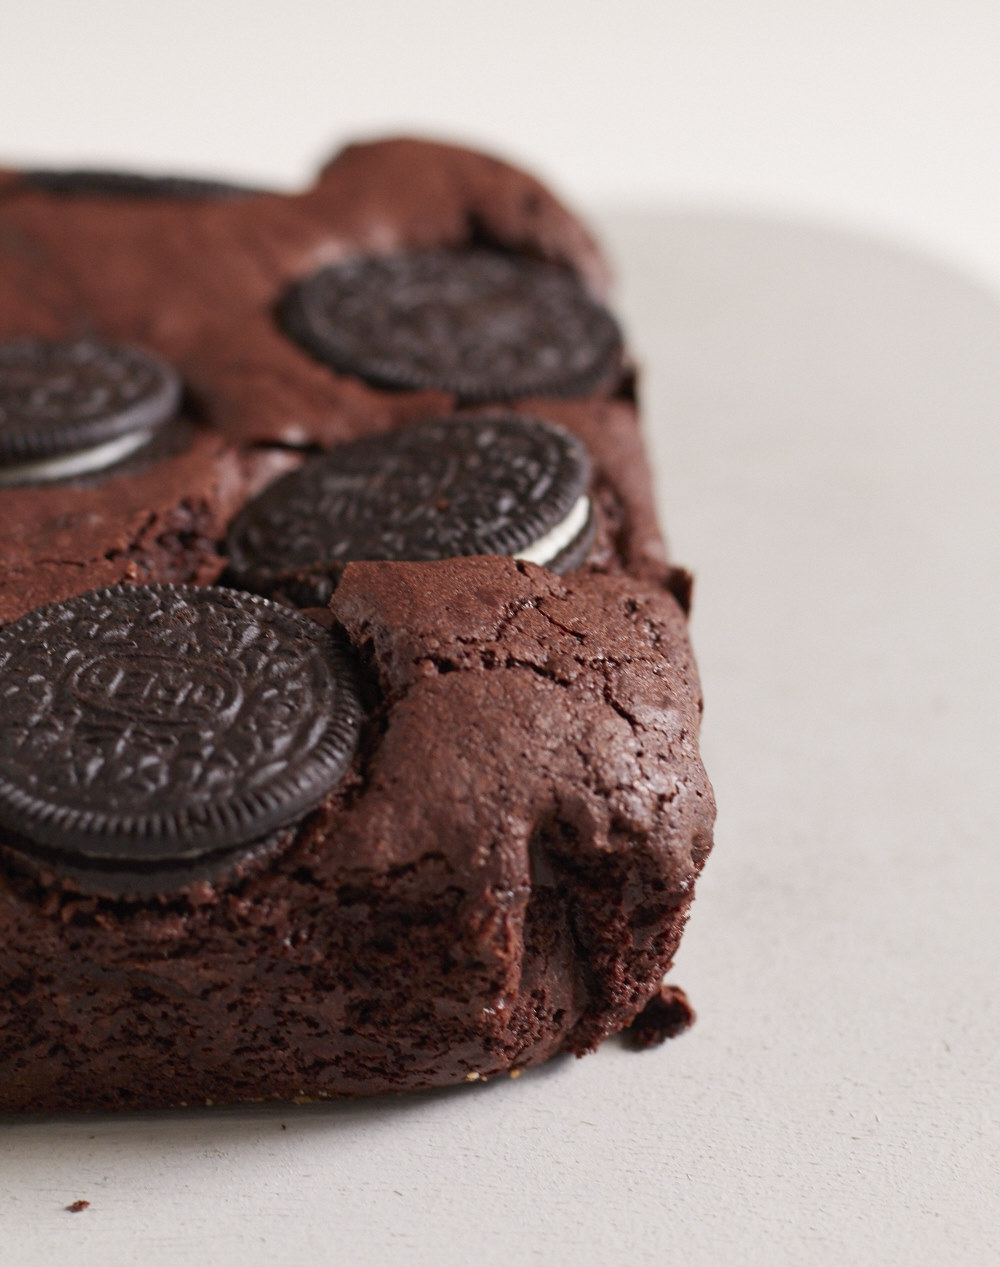 Köstlicher Brownie Kuchen mit Oreo Topping - besser geht´s nicht!